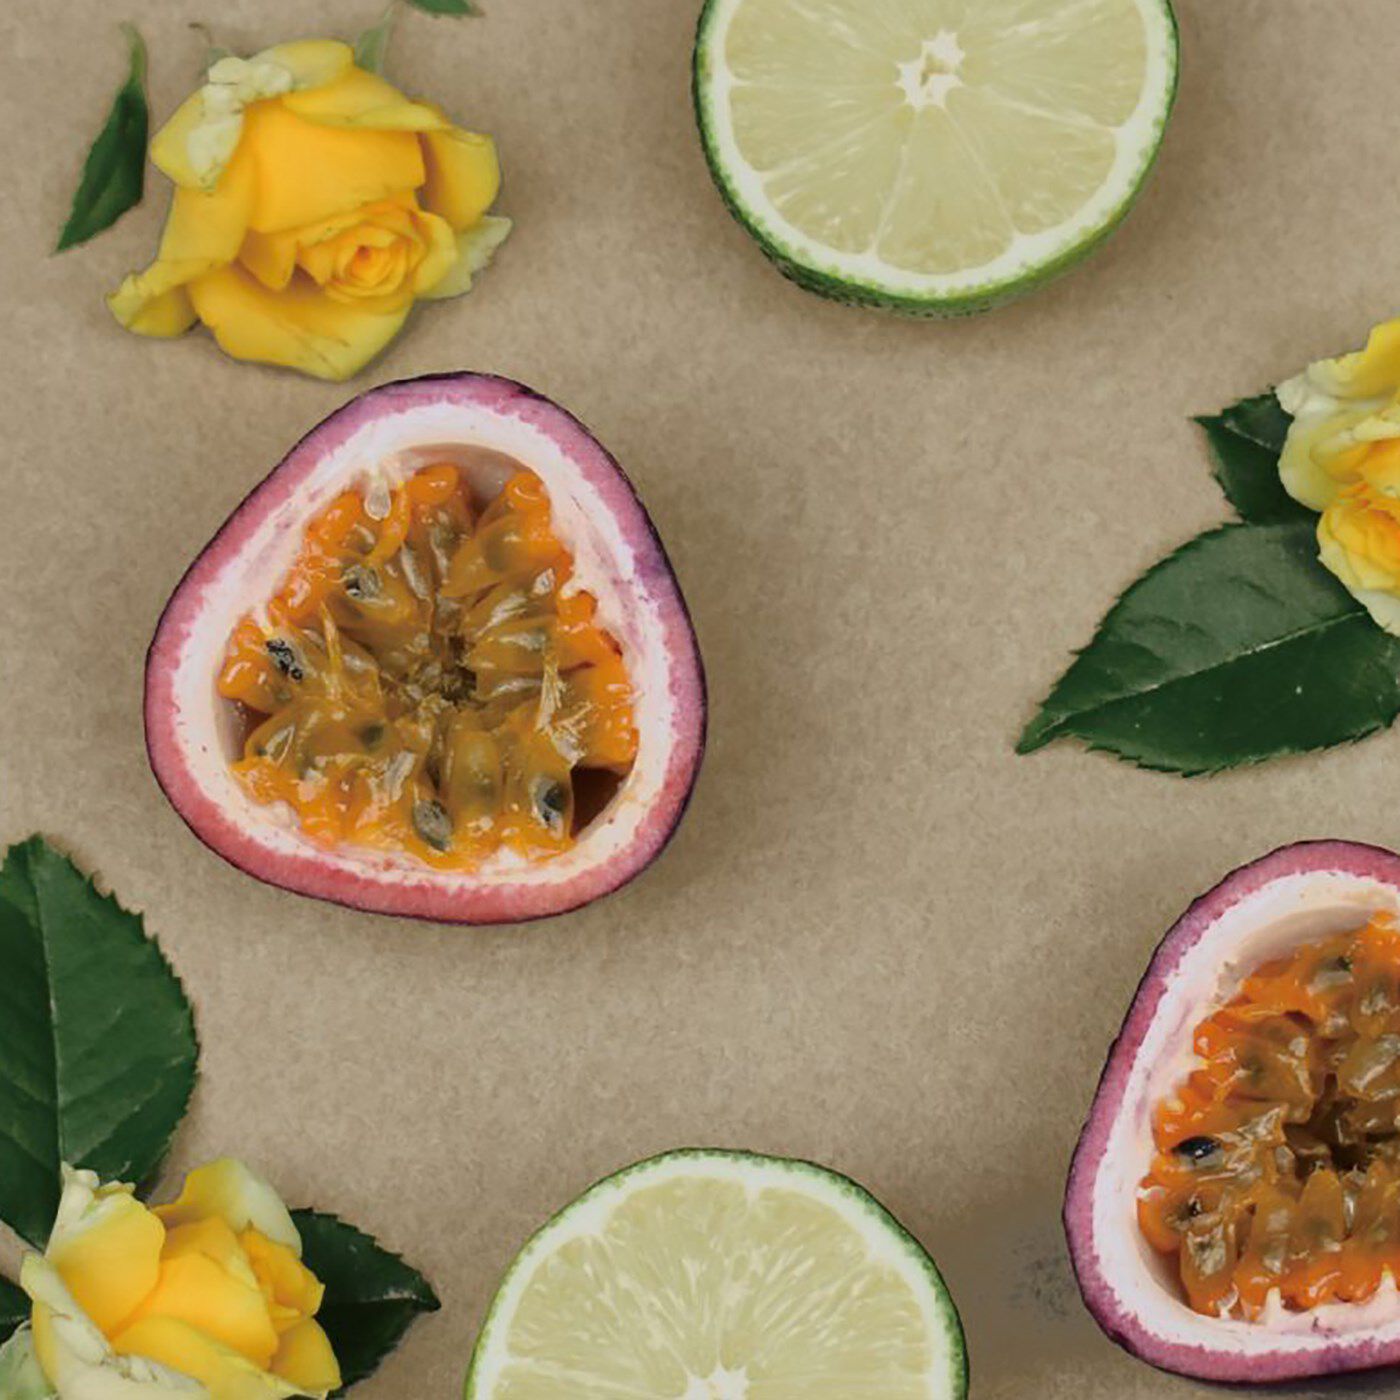 BEAUTY PROJECT|PERFUMERS  ソリッドパフュームの会|〈ブラウンダイアモンド〉　新鮮なパッションフルーツを中心に、甘い果物をきかせたシャンパンをイメージ。ムスク系の大人スイートな香り。